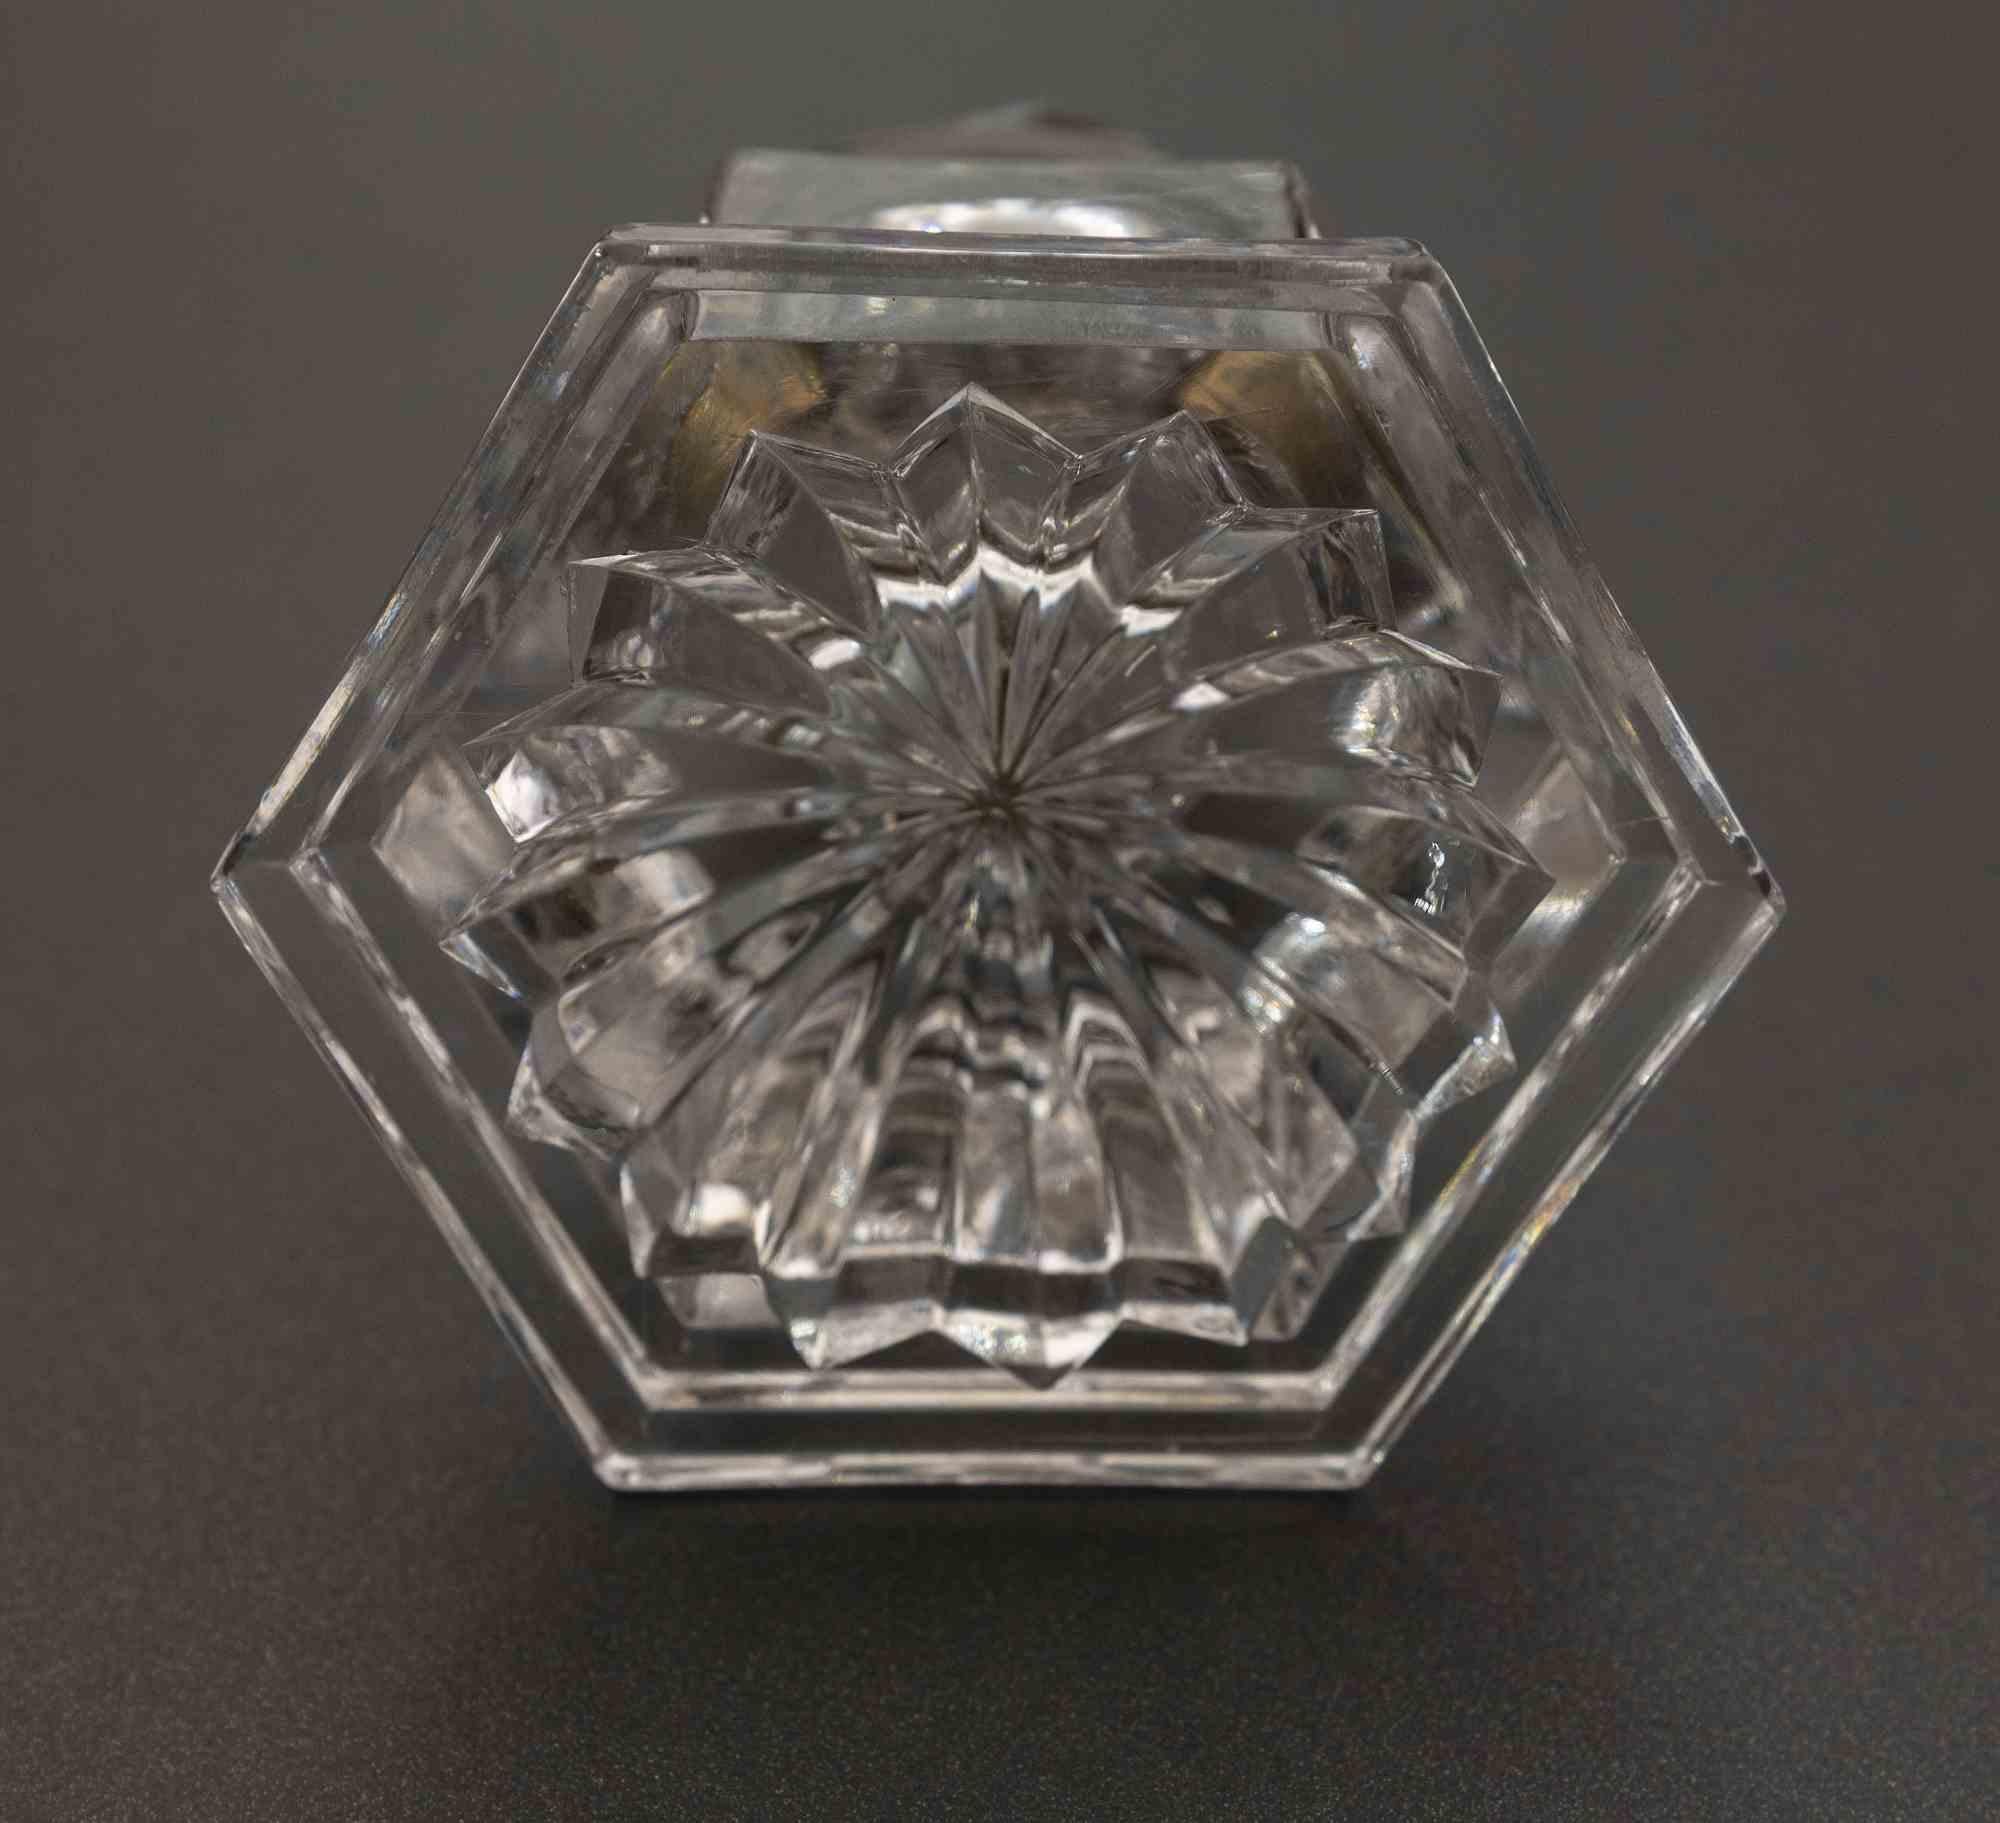 Das Kristalltintenfass mit Stopfen ist ein schönes Dekorationsobjekt.

Das Tintenfass ist sechseckig und befindet sich in einem guten Zustand.

Leichte Oxidation an der Basis des Stopfens.